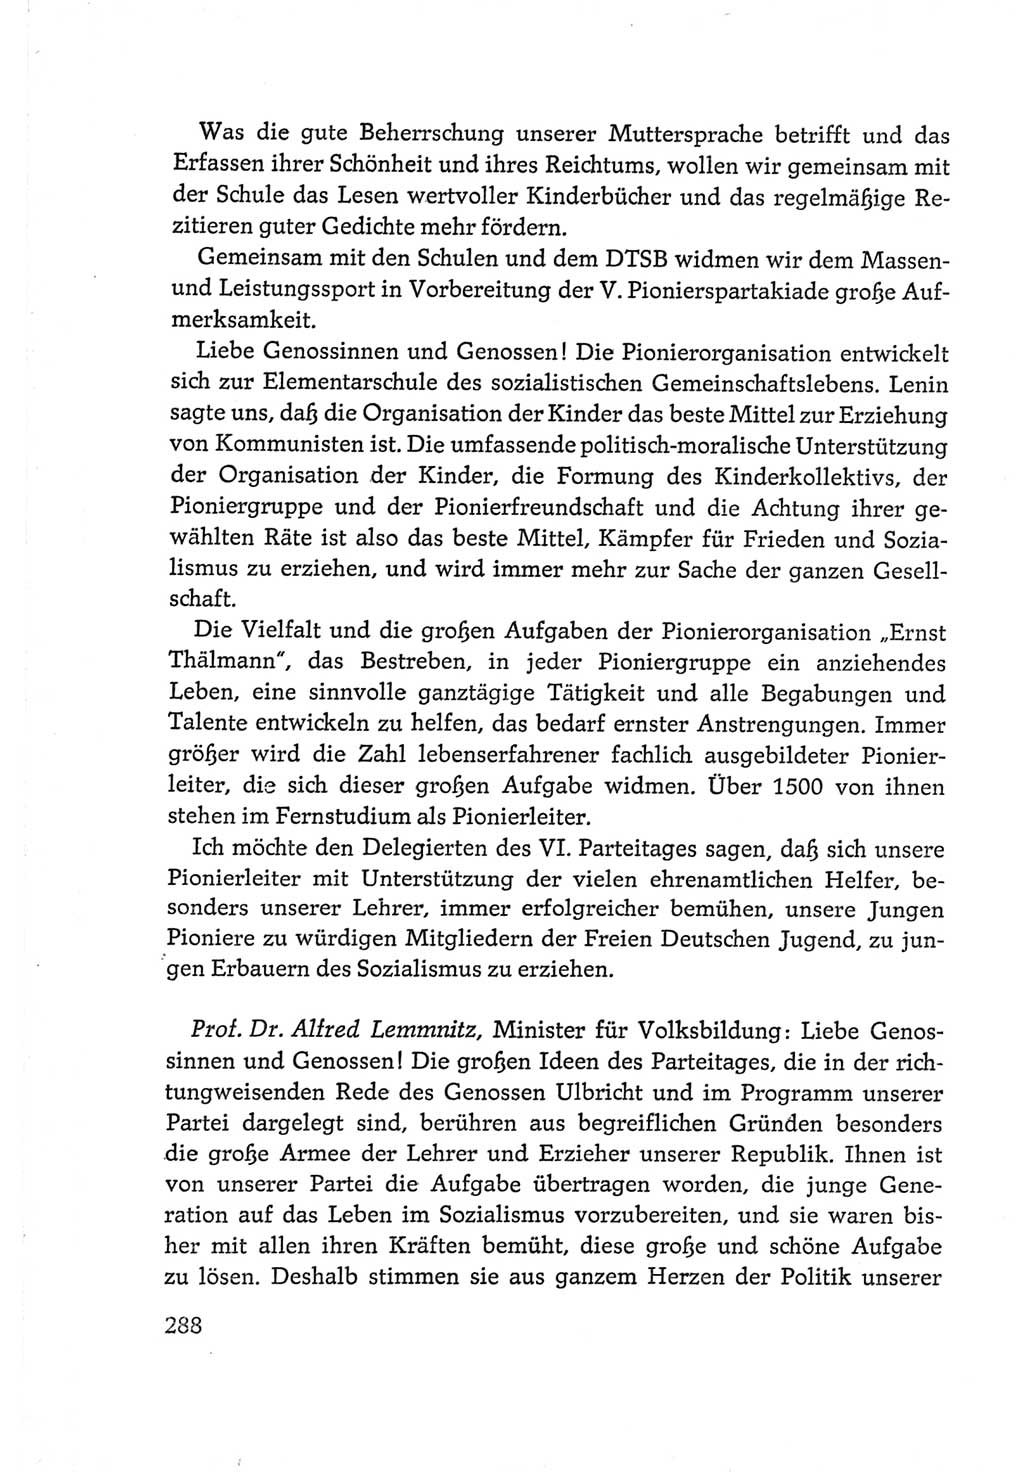 Protokoll der Verhandlungen des Ⅵ. Parteitages der Sozialistischen Einheitspartei Deutschlands (SED) [Deutsche Demokratische Republik (DDR)] 1963, Band Ⅲ, Seite 288 (Prot. Verh. Ⅵ. PT SED DDR 1963, Bd. Ⅲ, S. 288)